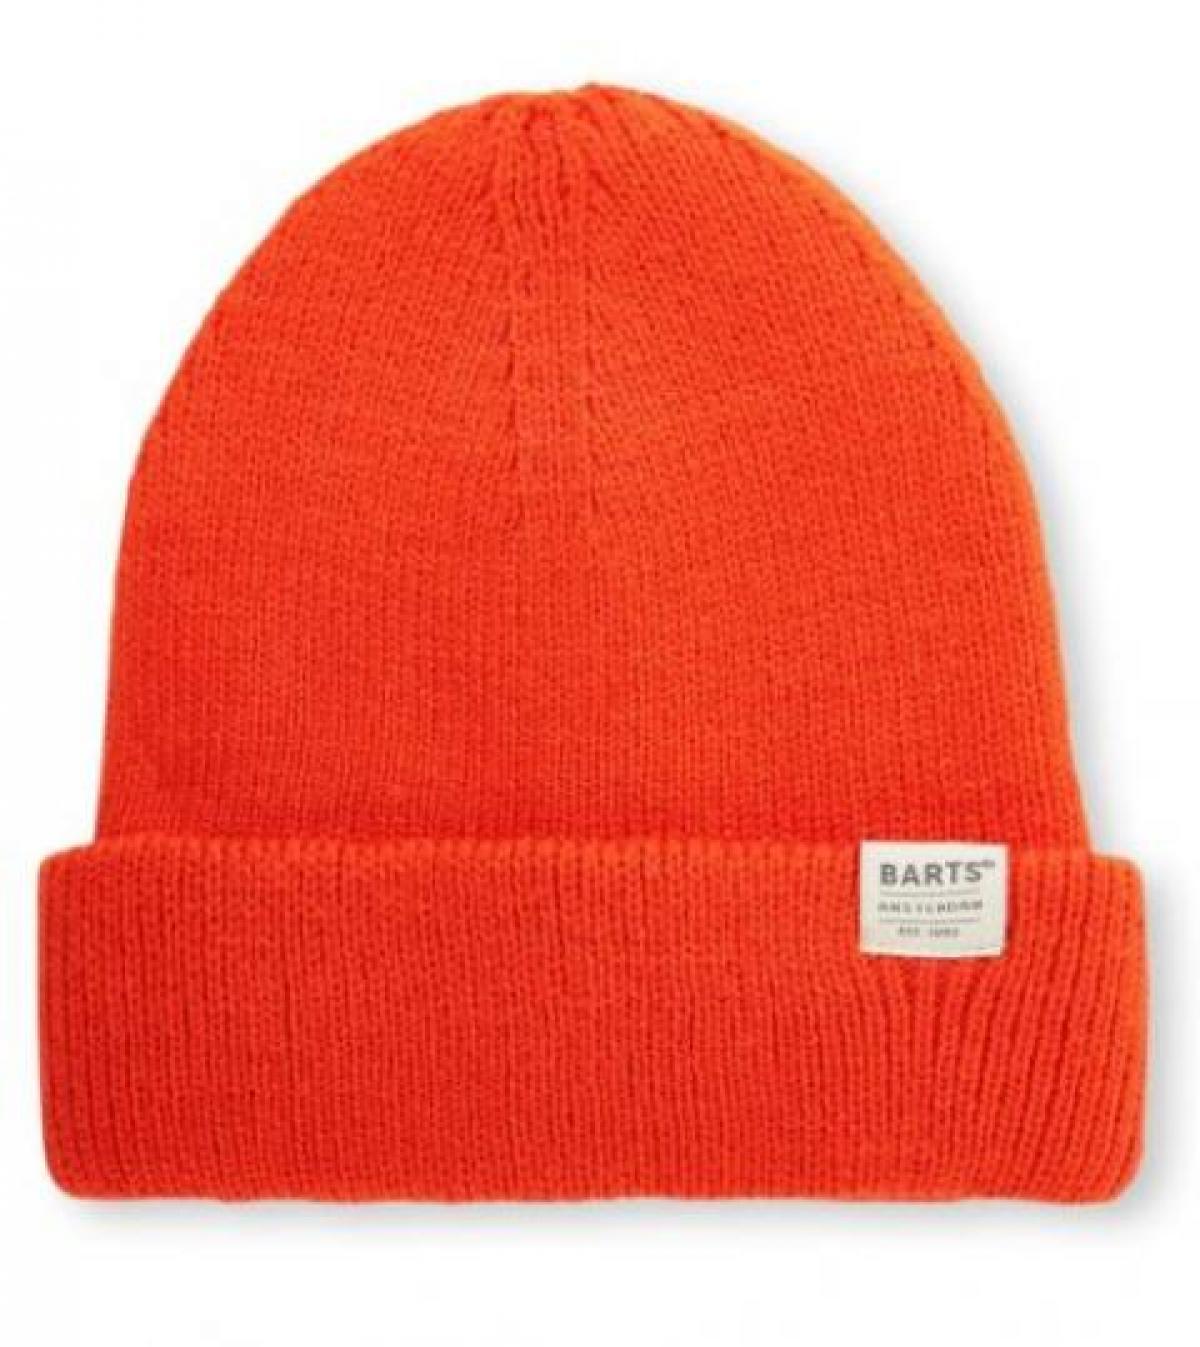 Le bonnet orange